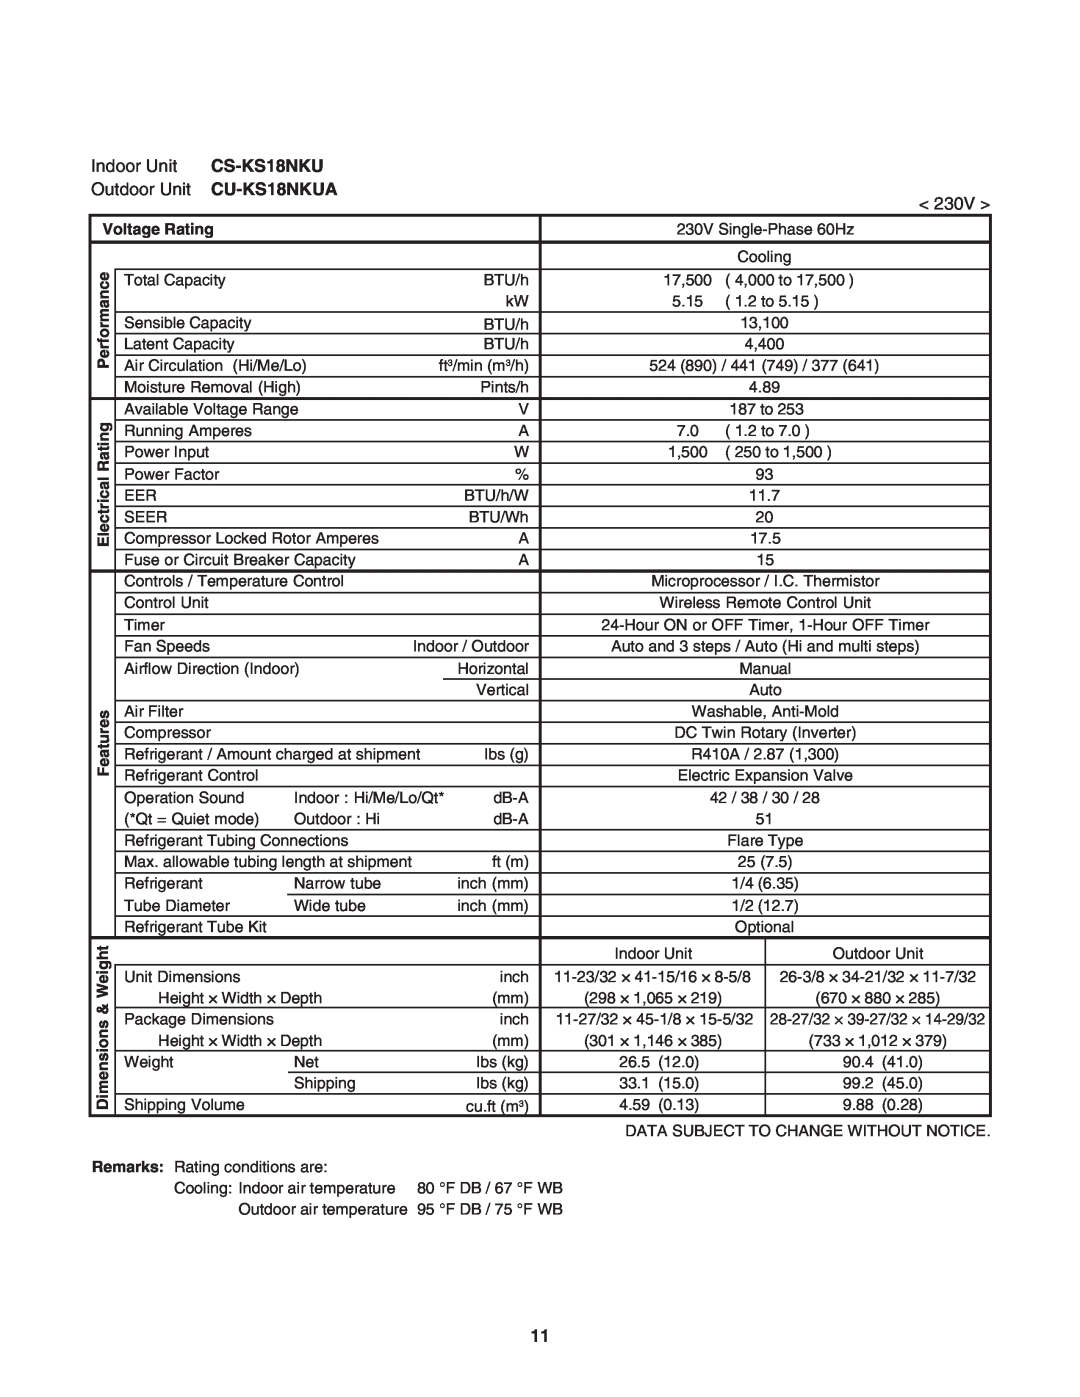 Panasonic CU-KS24NKUA, CS-KS24NKU service manual CS-KS18NKU, CU-KS18NKUA, Voltage Rating, ical, Electr 